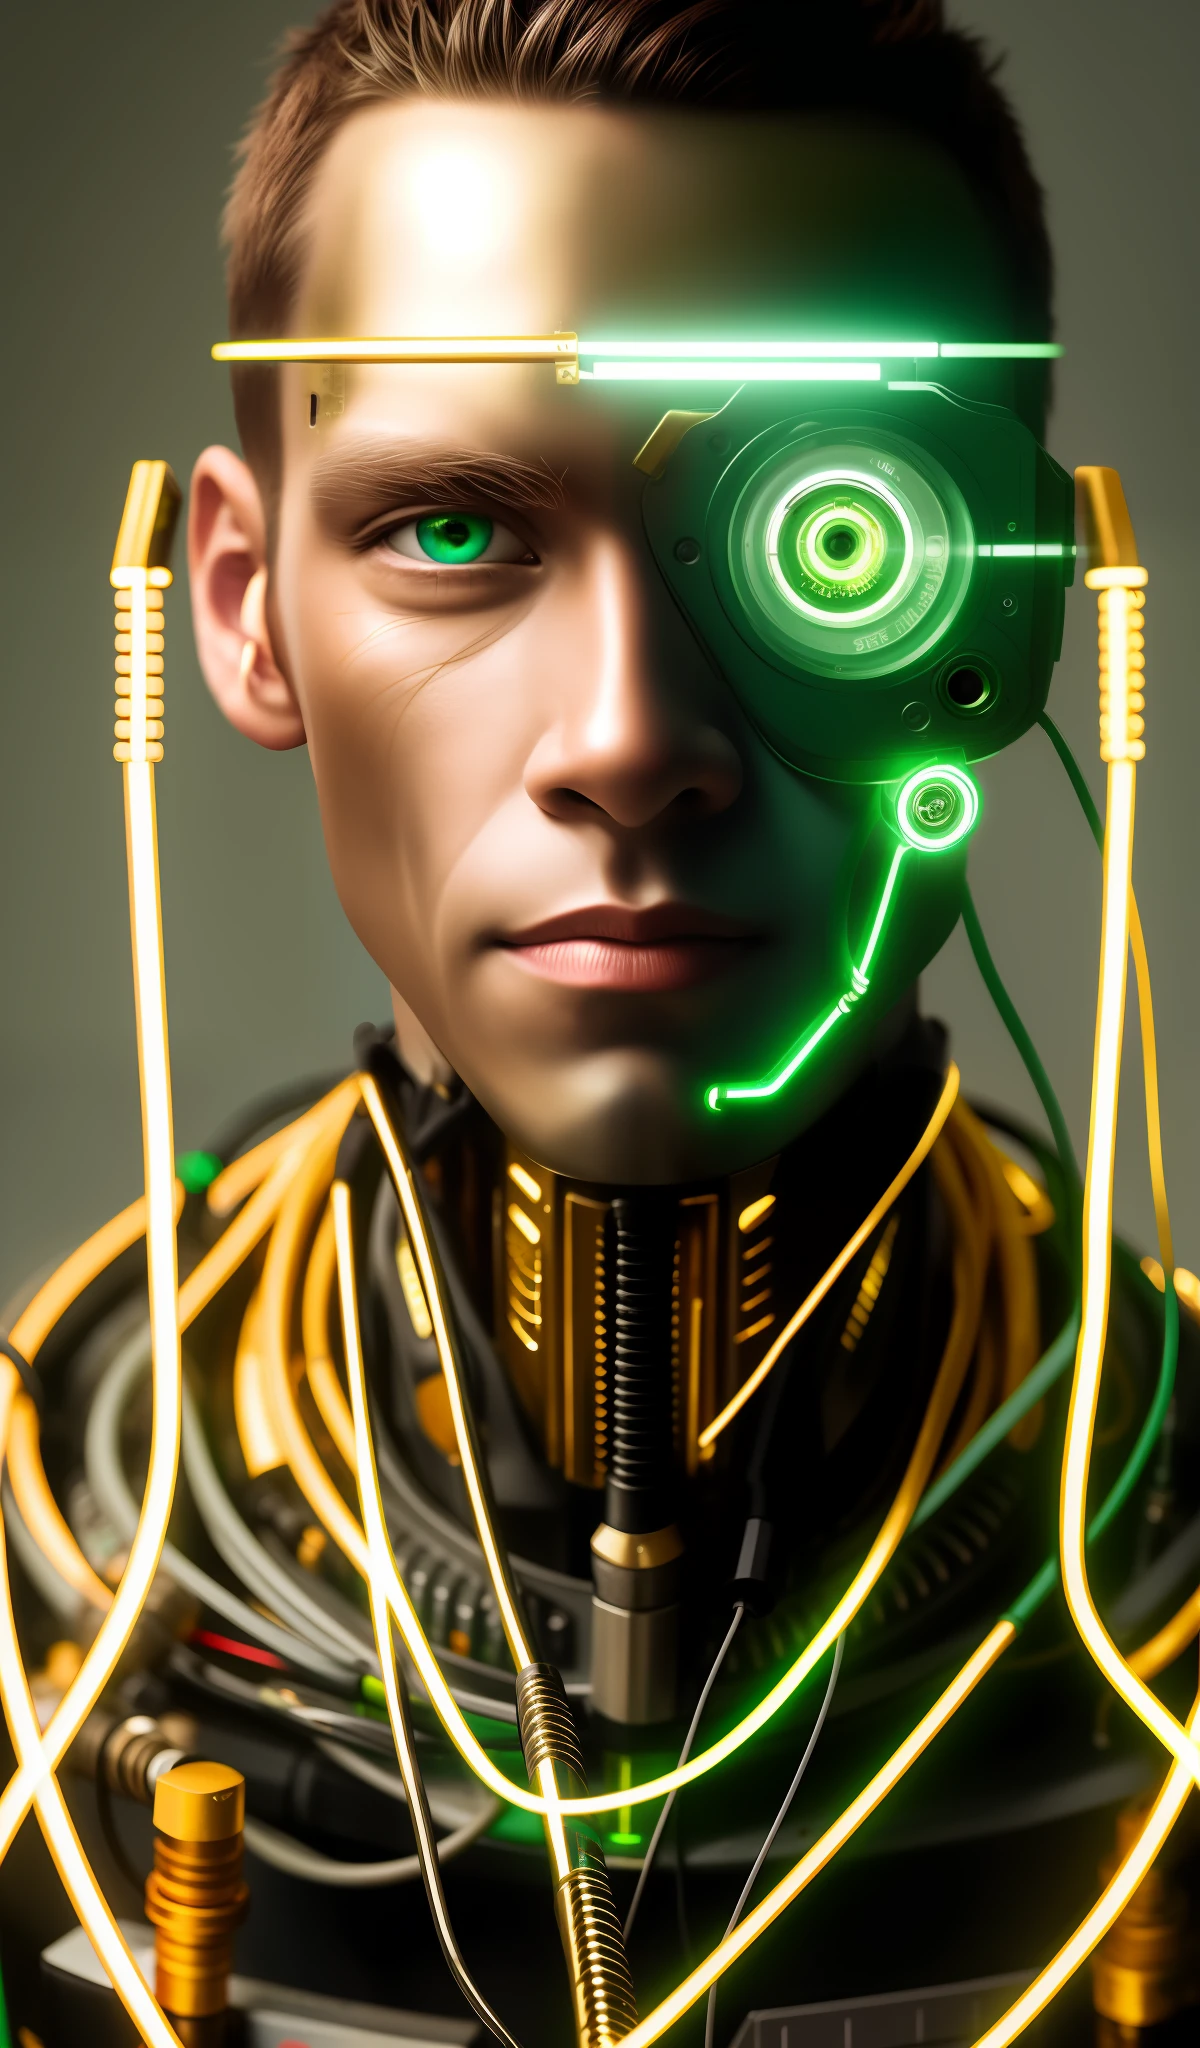 機器人的肖像, 綠眼睛, 猴, 模特兒臉, 裸露的電線, 金油從生鏽的電線中逸出